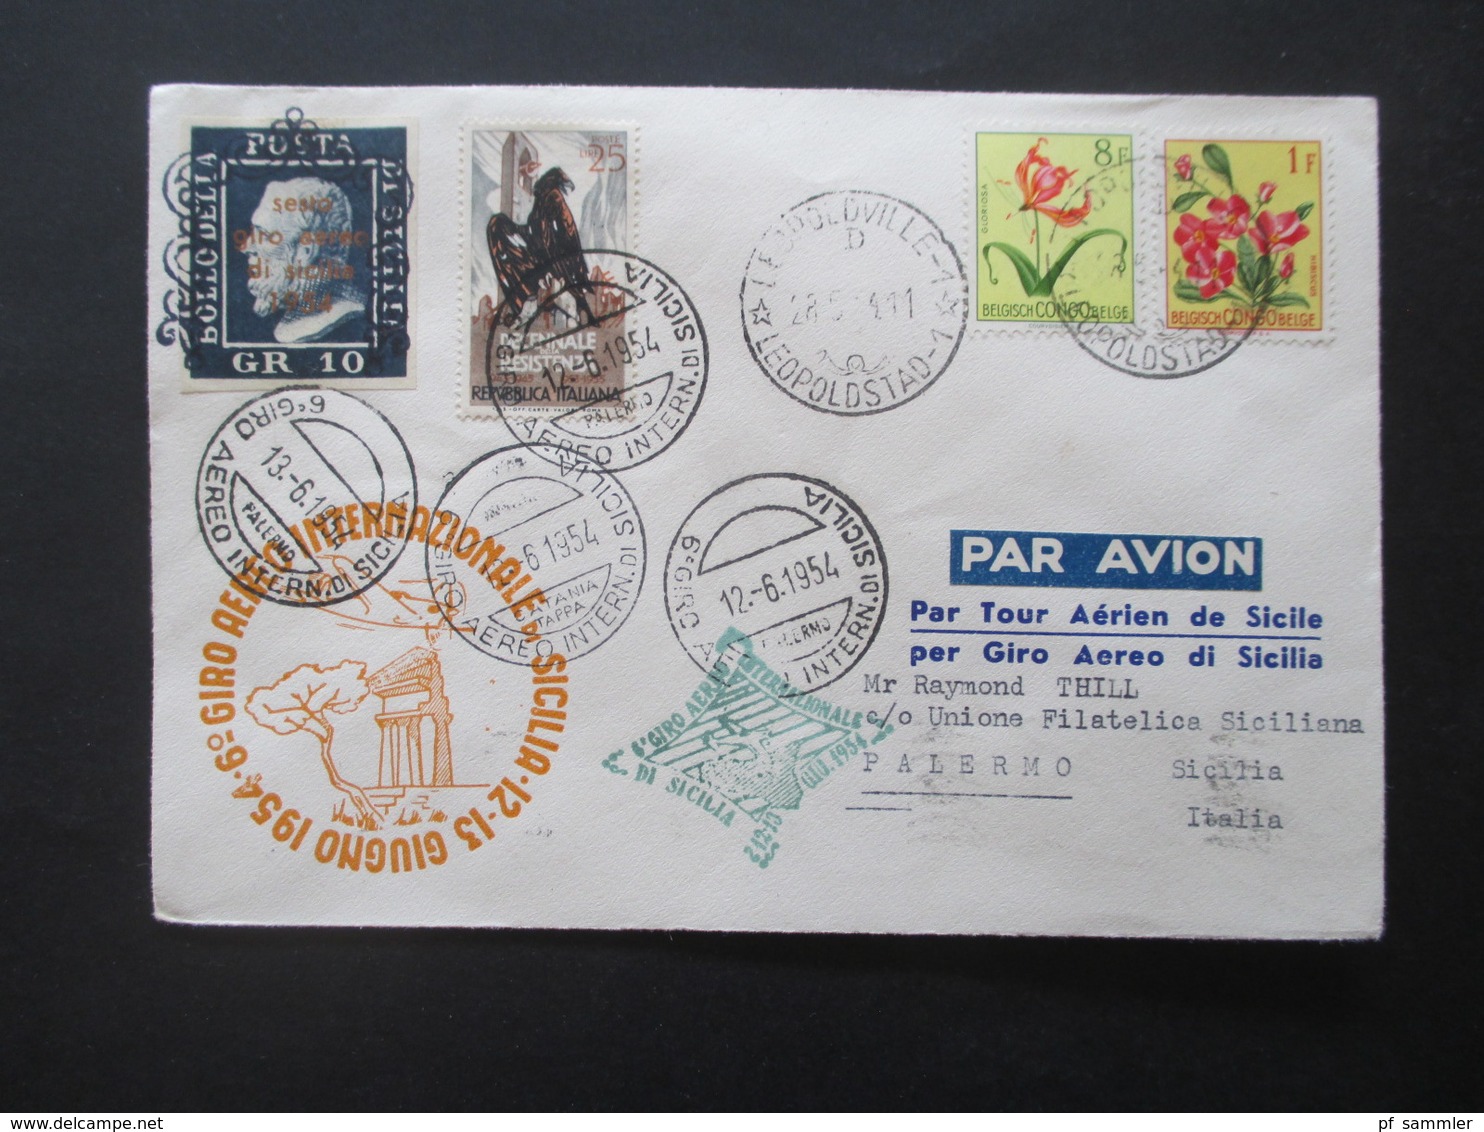 Italien / Belgisch Congo 1954 Luftpost / Aeroclub Palermo / Giro Aereo Intern Di Sicilia Mit Original Unterschrift Pilot - Luftpost